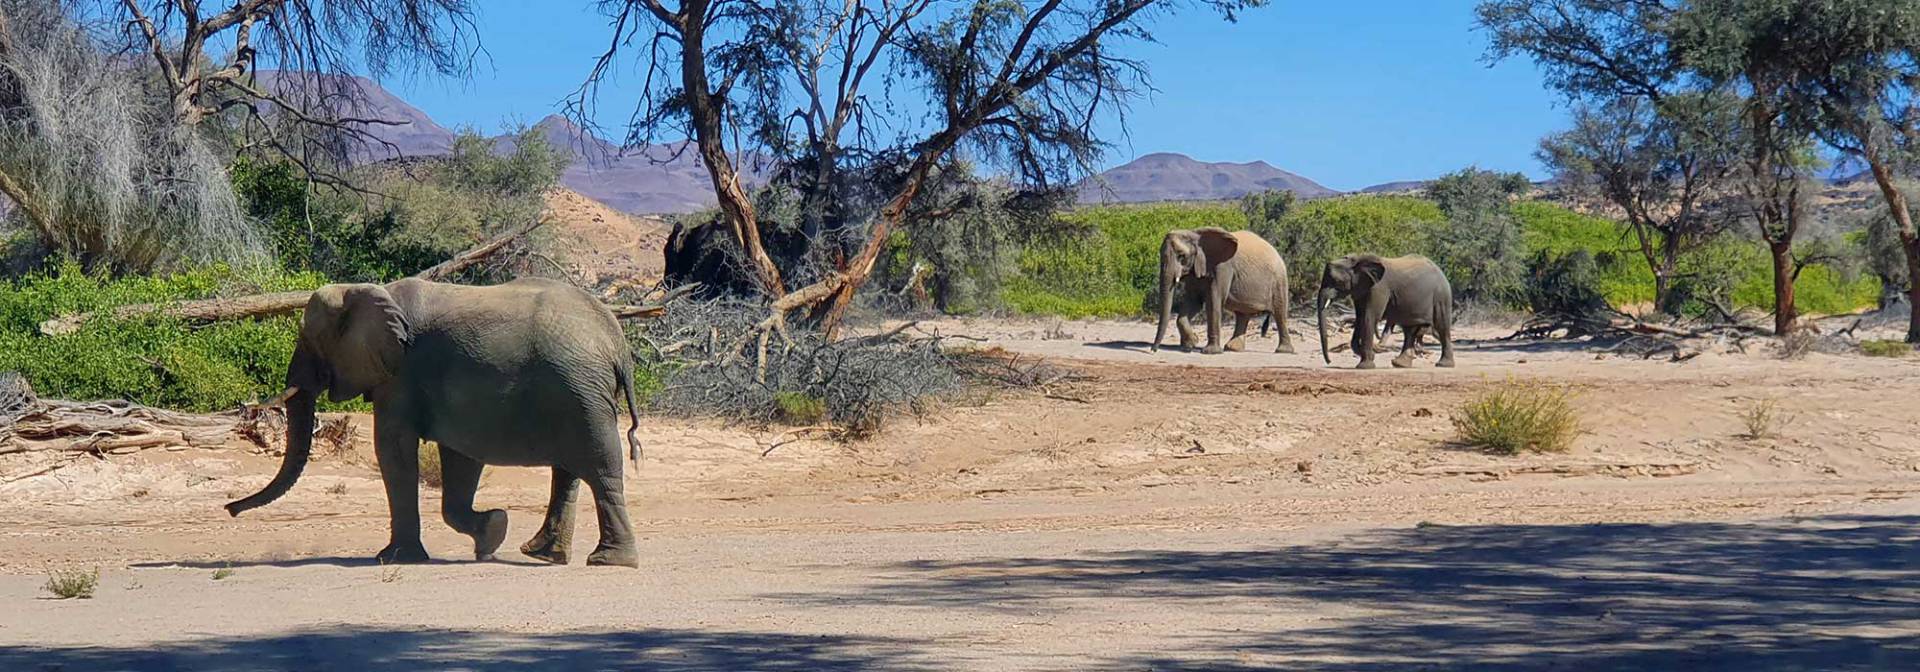 Wüstenelefanten bei Purros